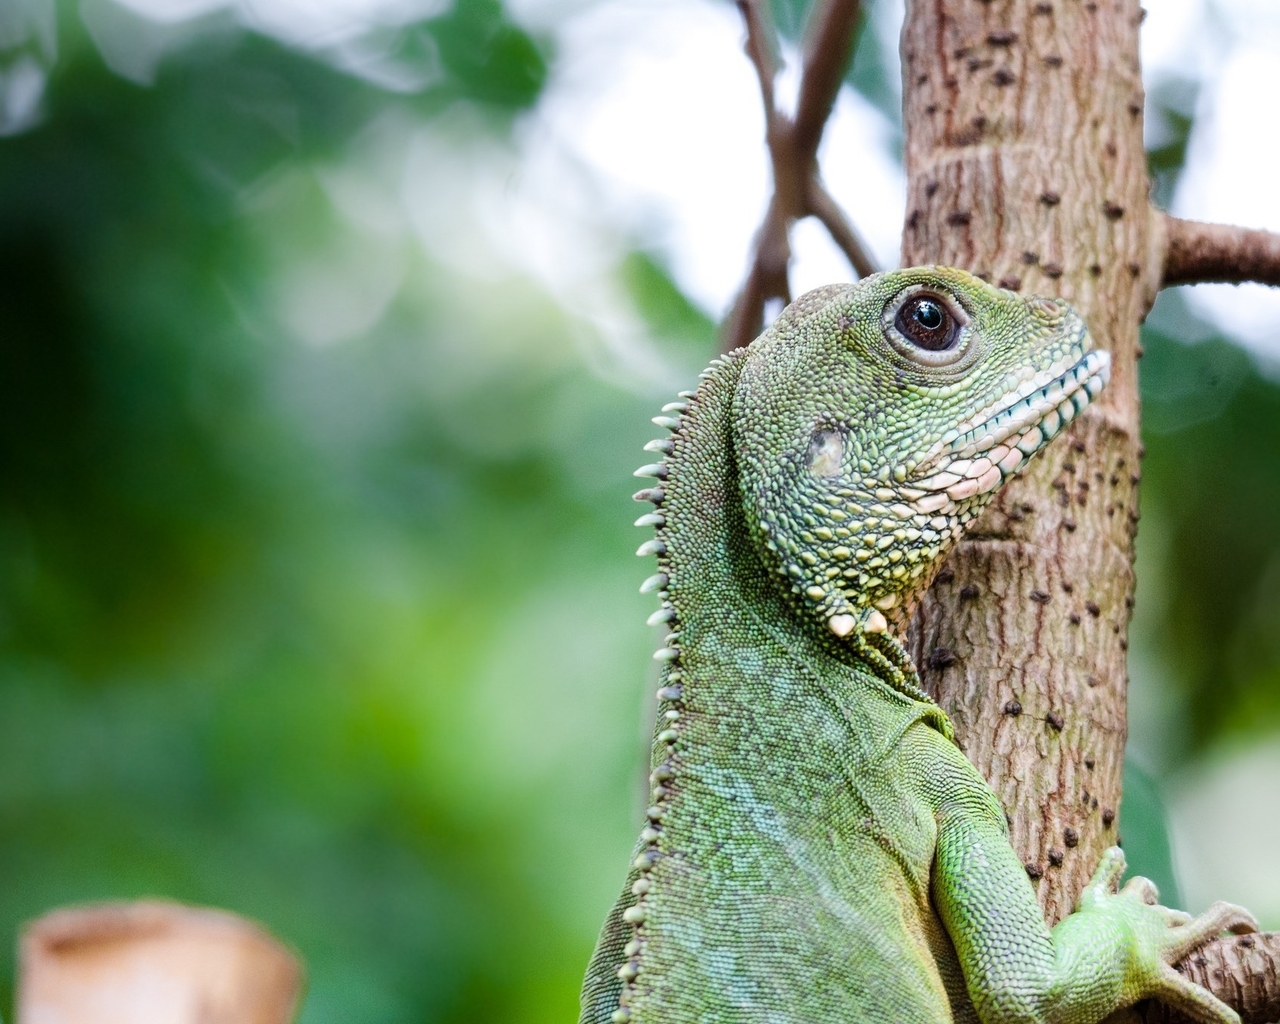 Image: Iguana, green, crawling, tree, branch